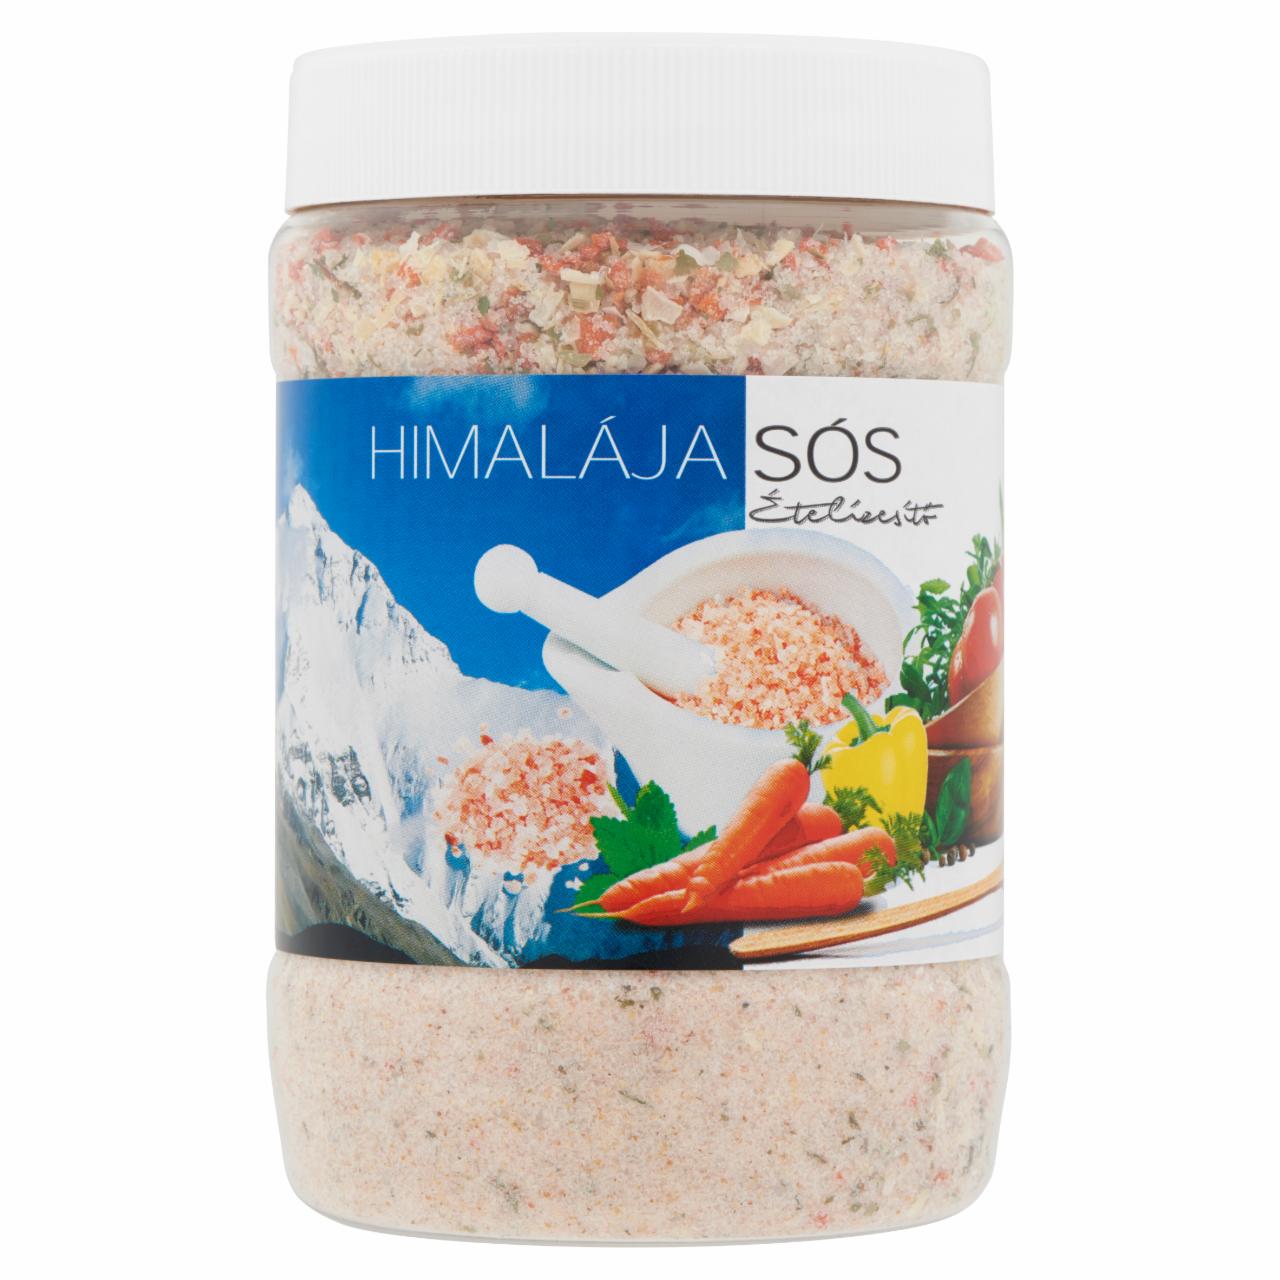 Képek - Himalája sós ételízesítő 700 g